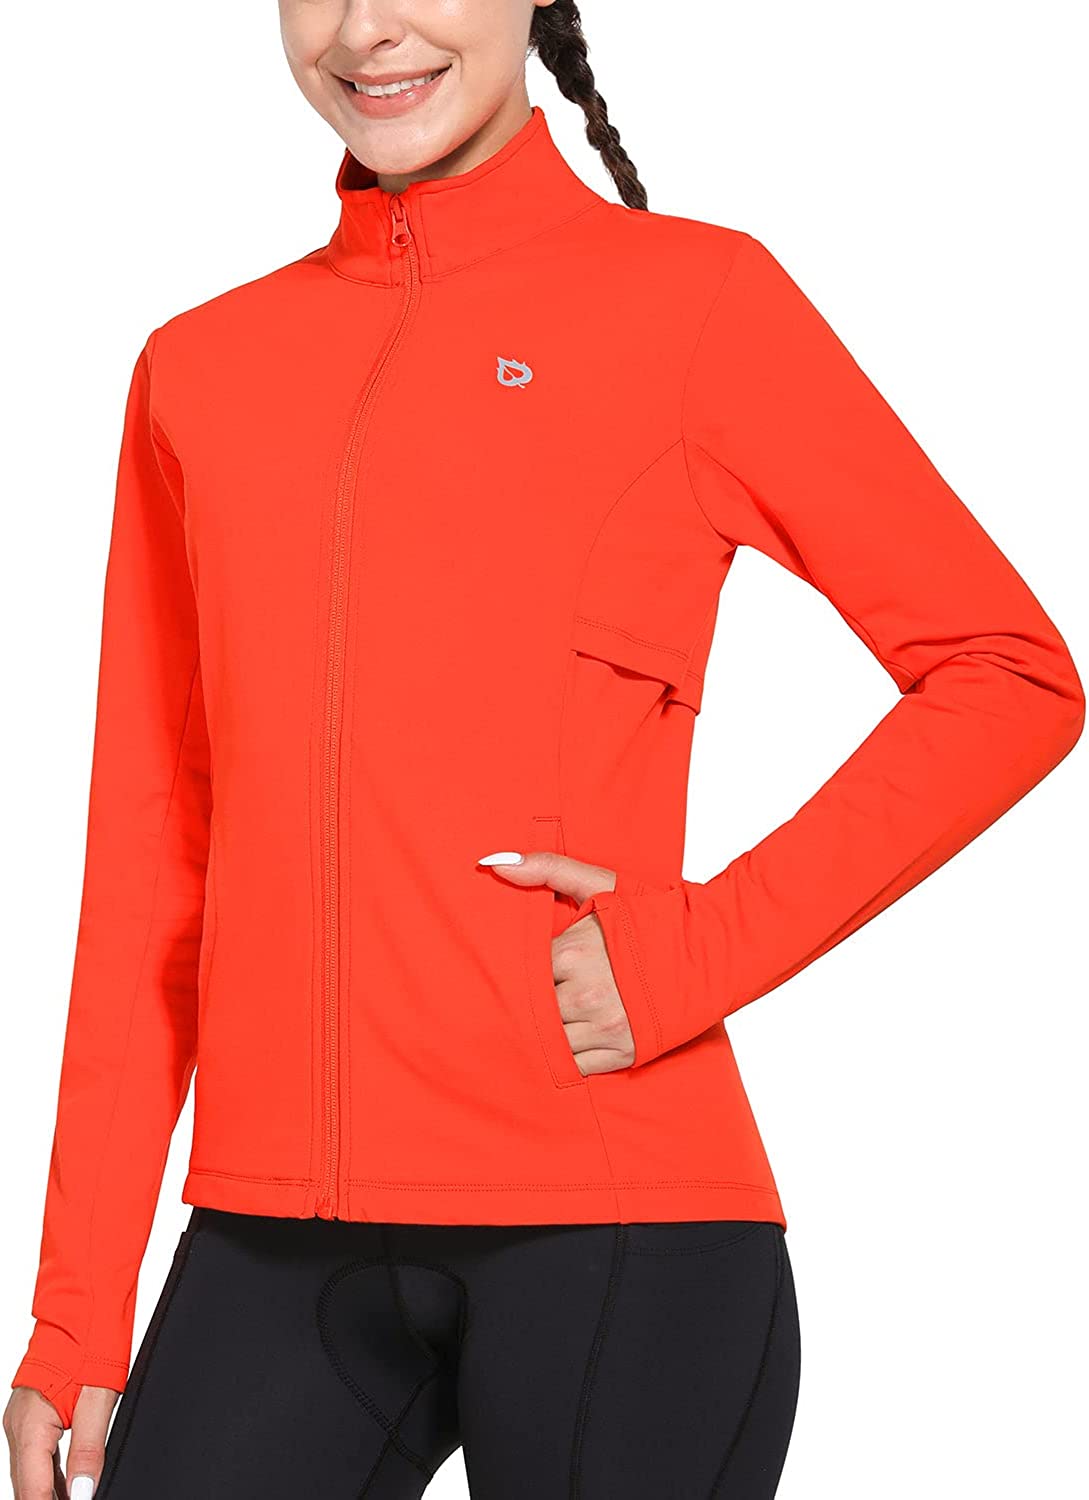 BALEAF Women's Fleece Running Jacket Water Resistant Full Zip